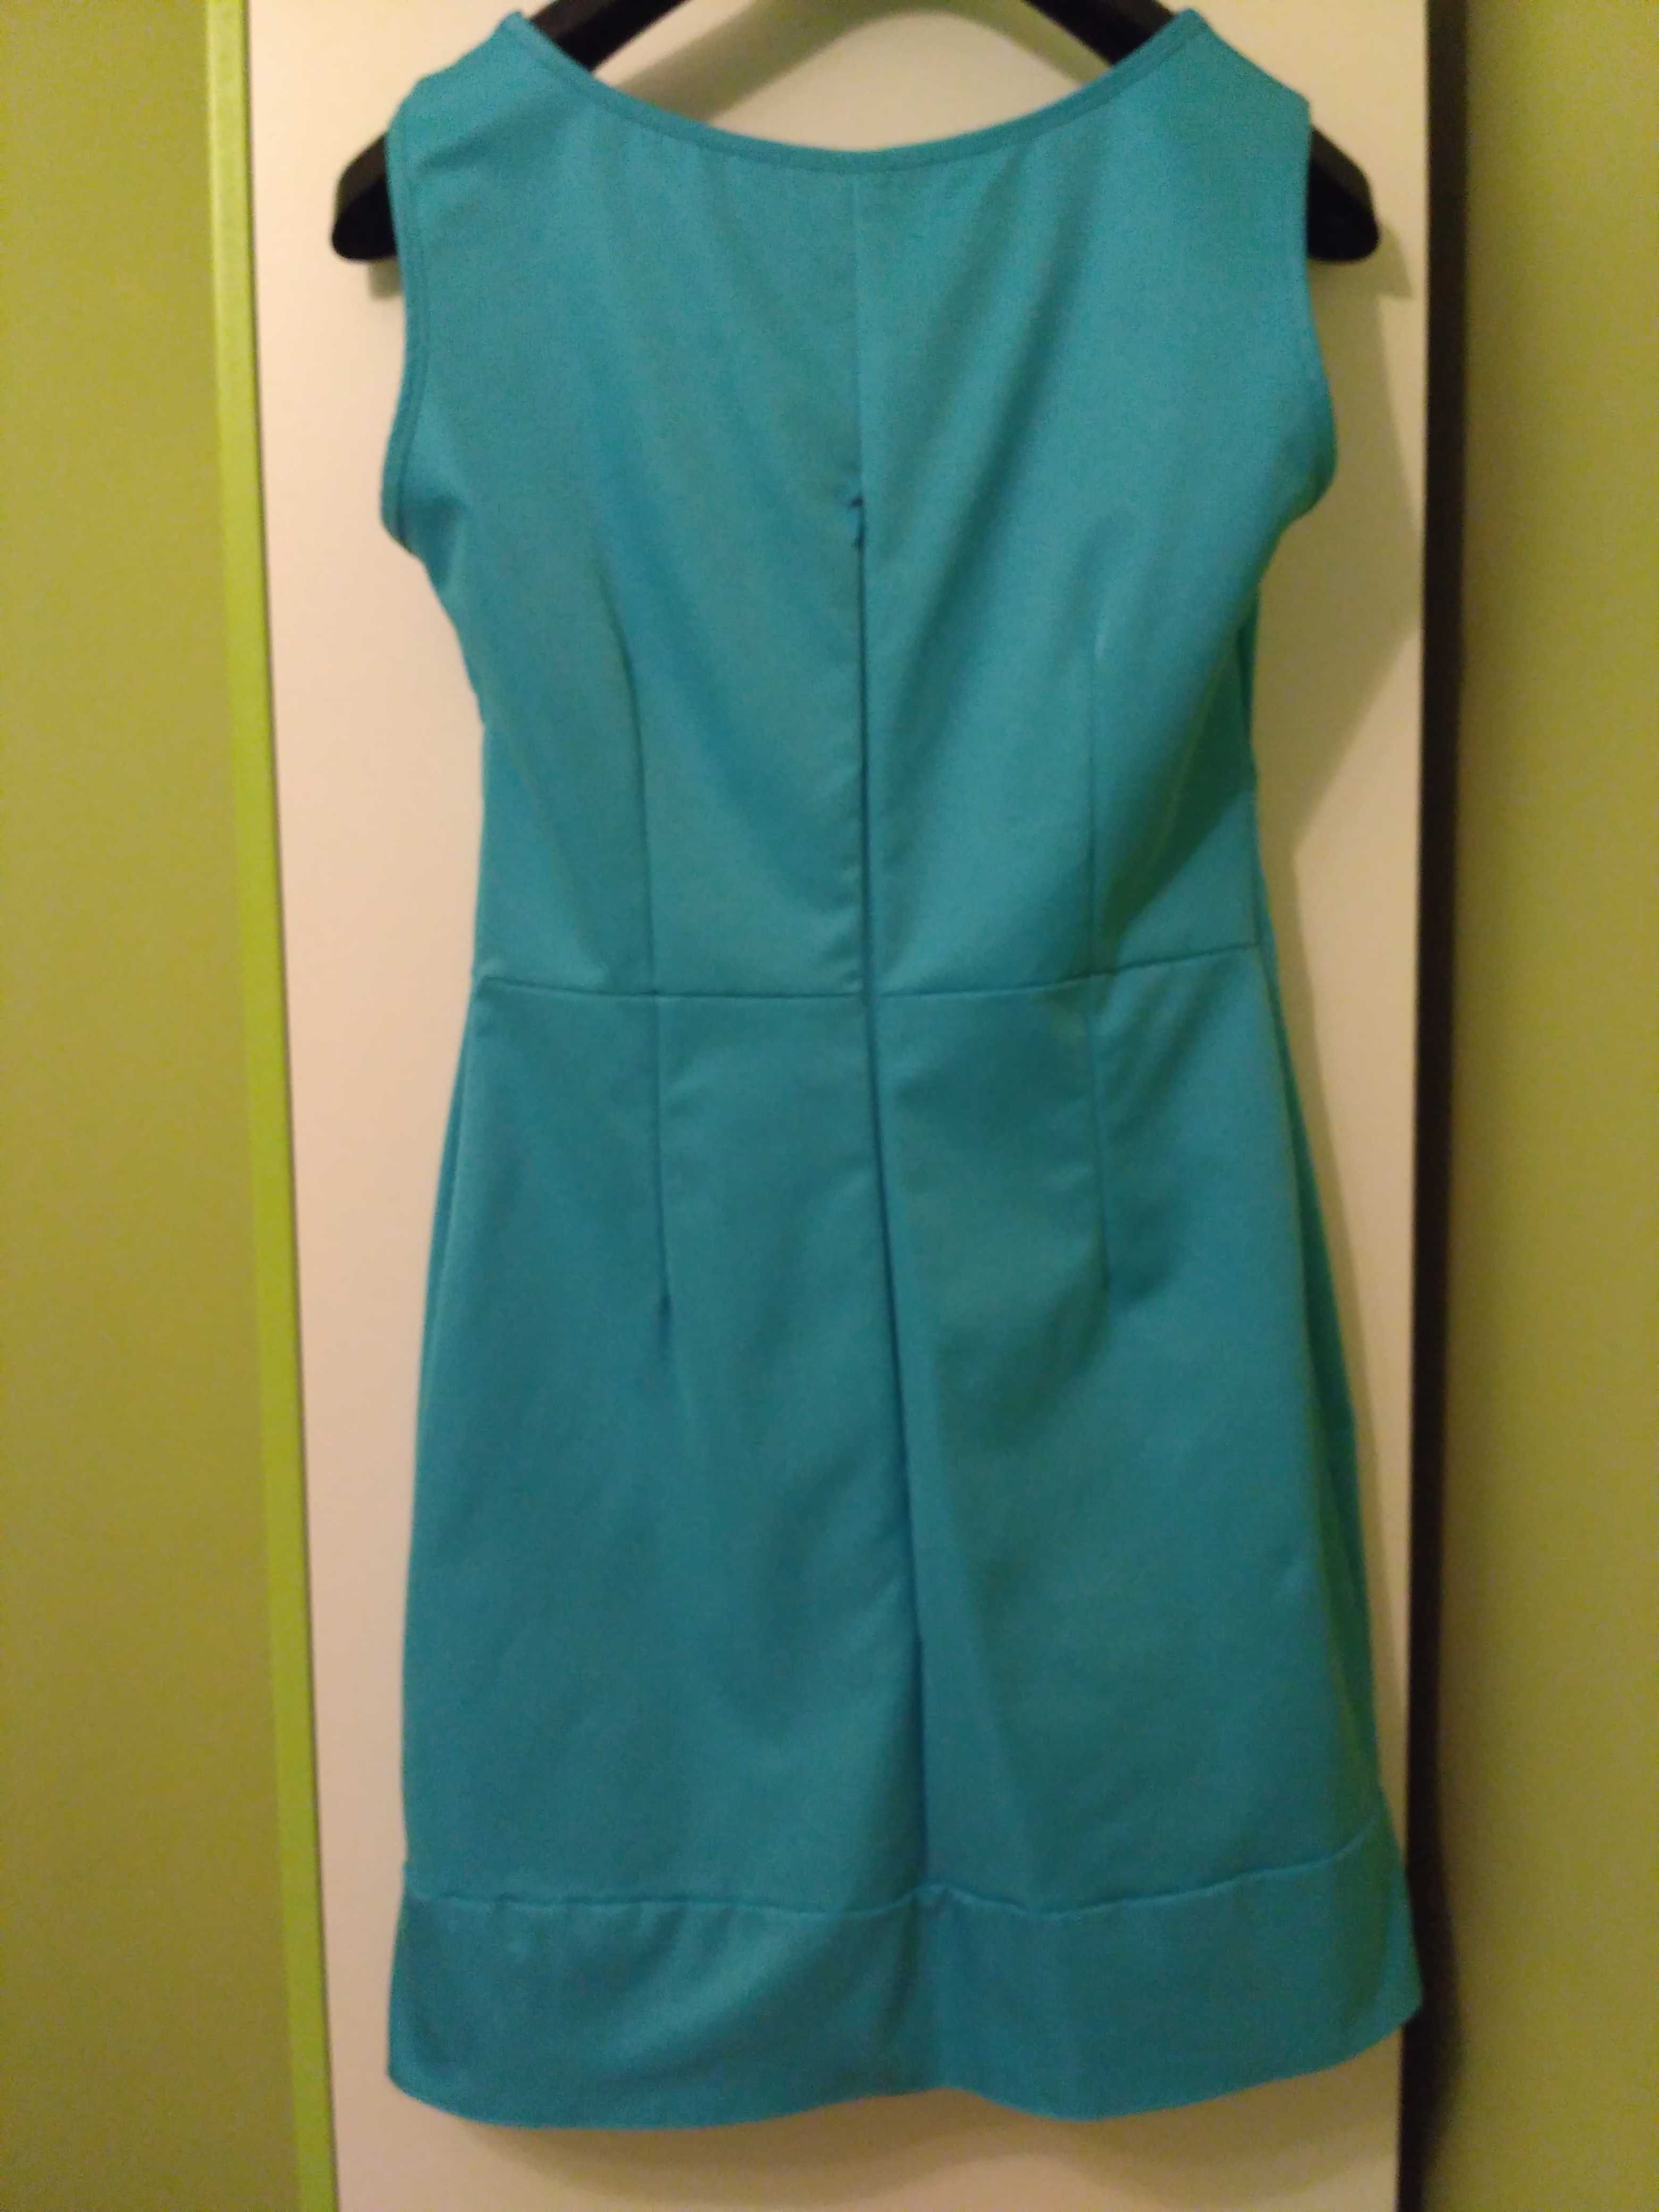 Sukienka niebieska 36 S,bez rękawów, bd.jakość,komunia,chrzciny,wesele